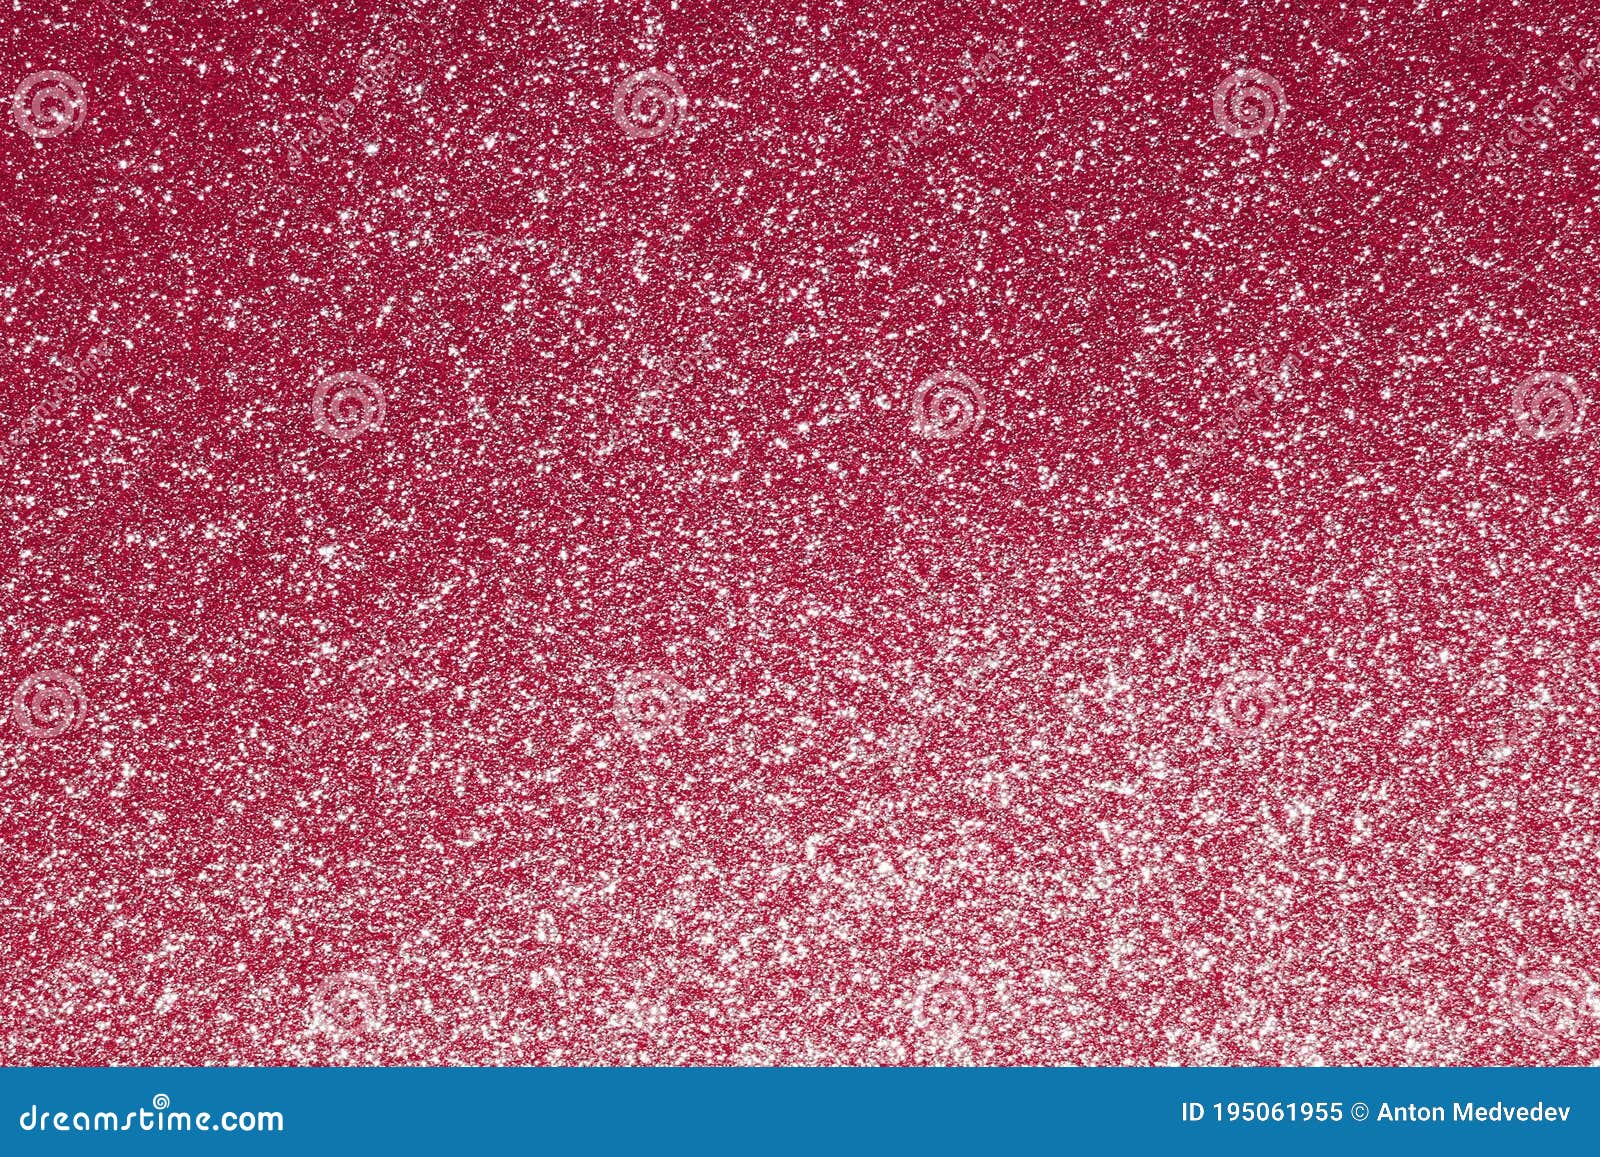 Фон фотографии красной сверкающей серебряной текстуры концепции ночного клуба плиты песка подробную красивая абстрактная Стоковое Изображение - изображение насчитывающей праздничный, рубин: 195061955